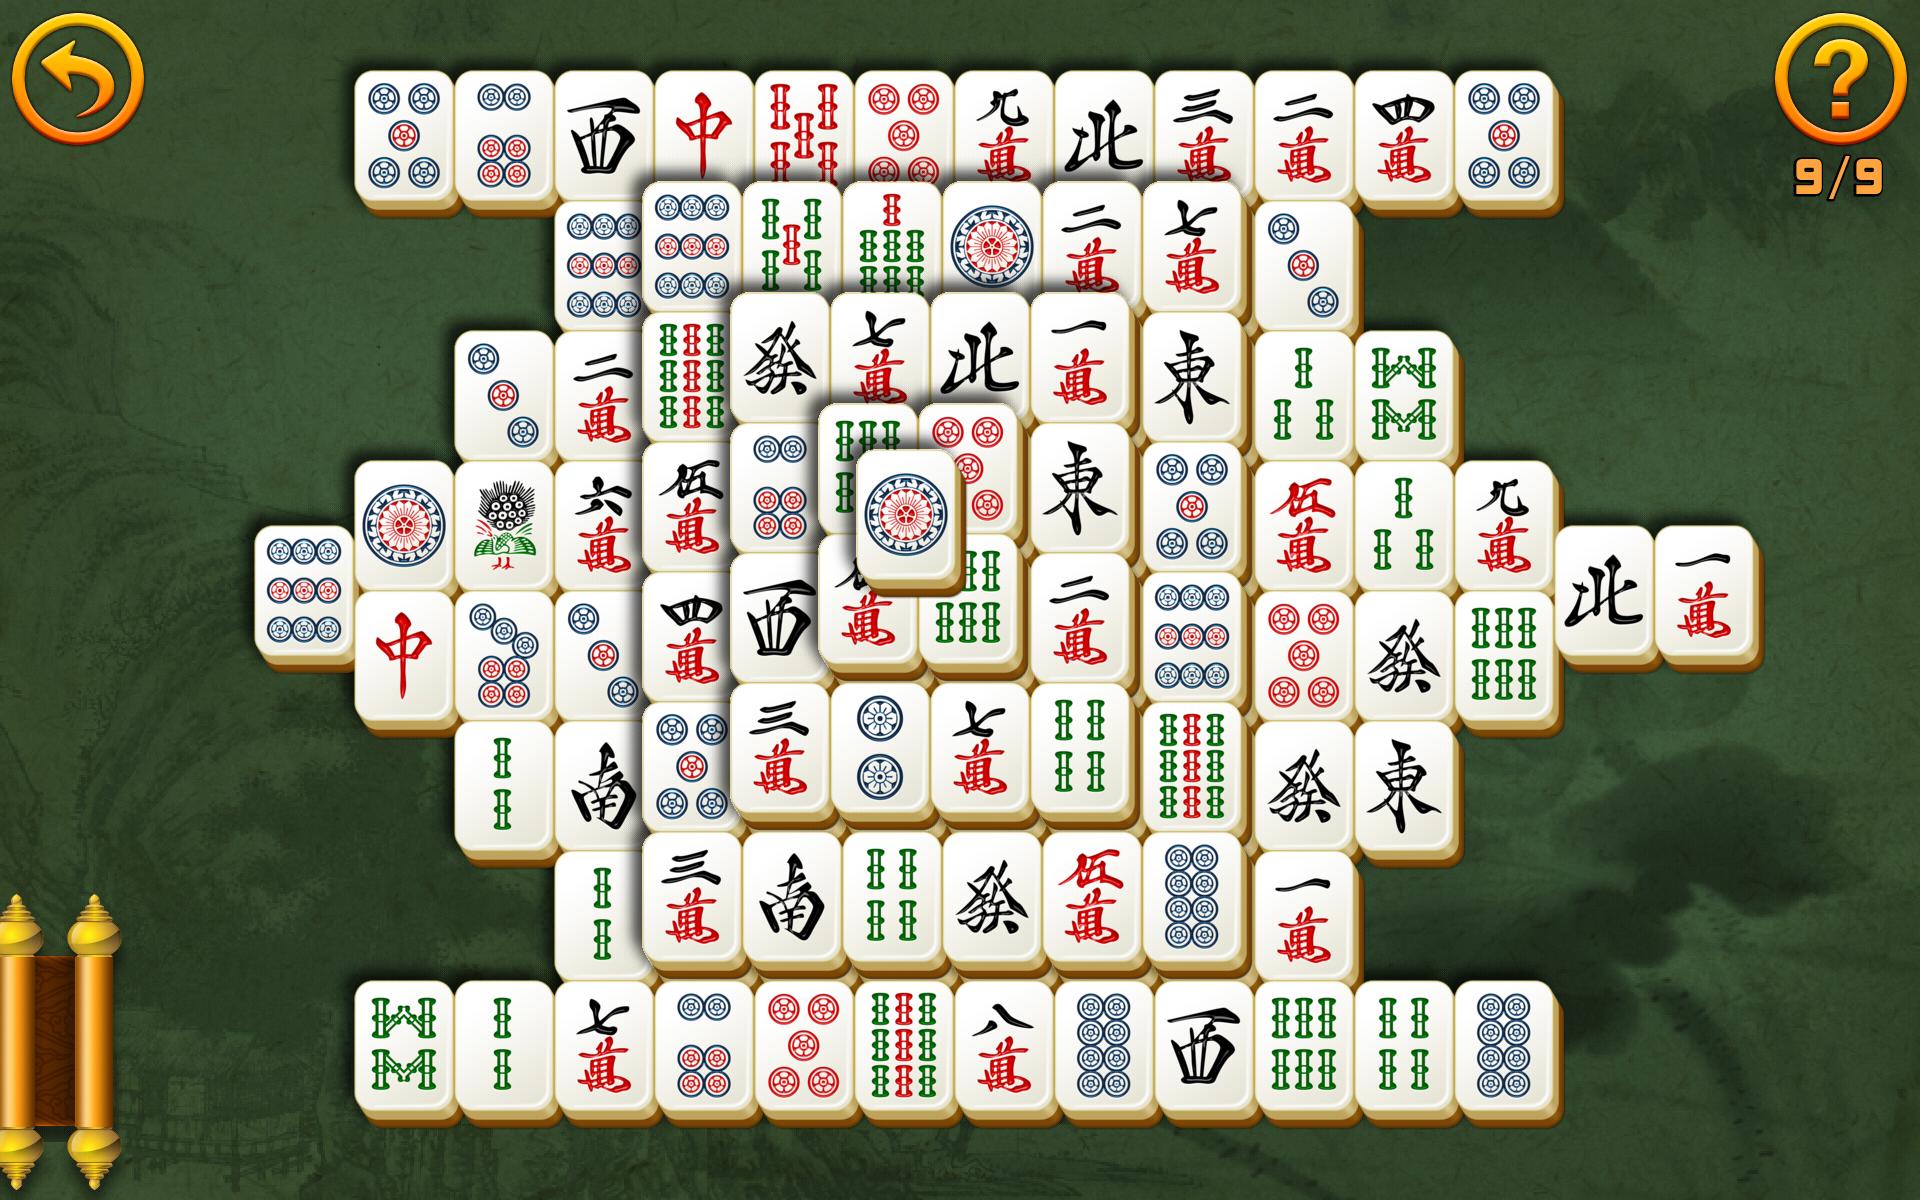 Vfl jyu маджонг играть. Игра Mahjong классический. Мадрожнга. Mandjoing. Маджонг старый.